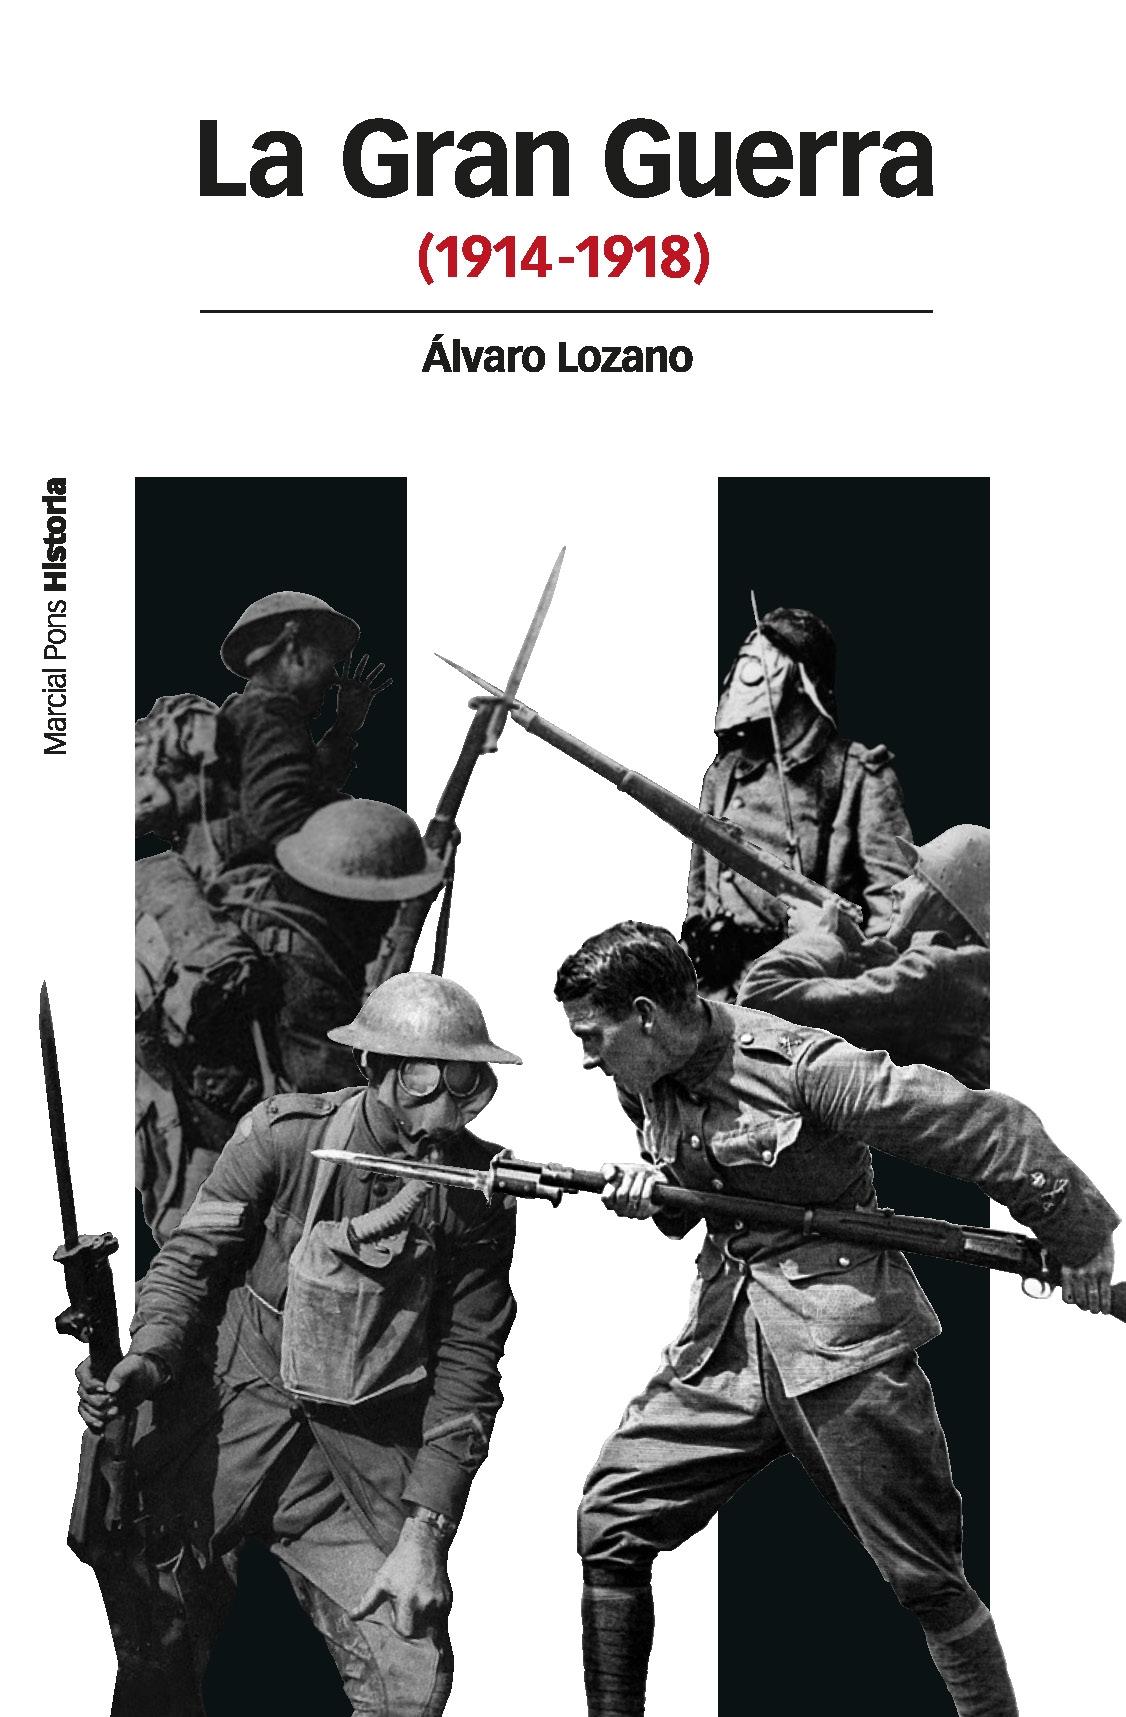 Gran Guerra, La "(1914-1918)"